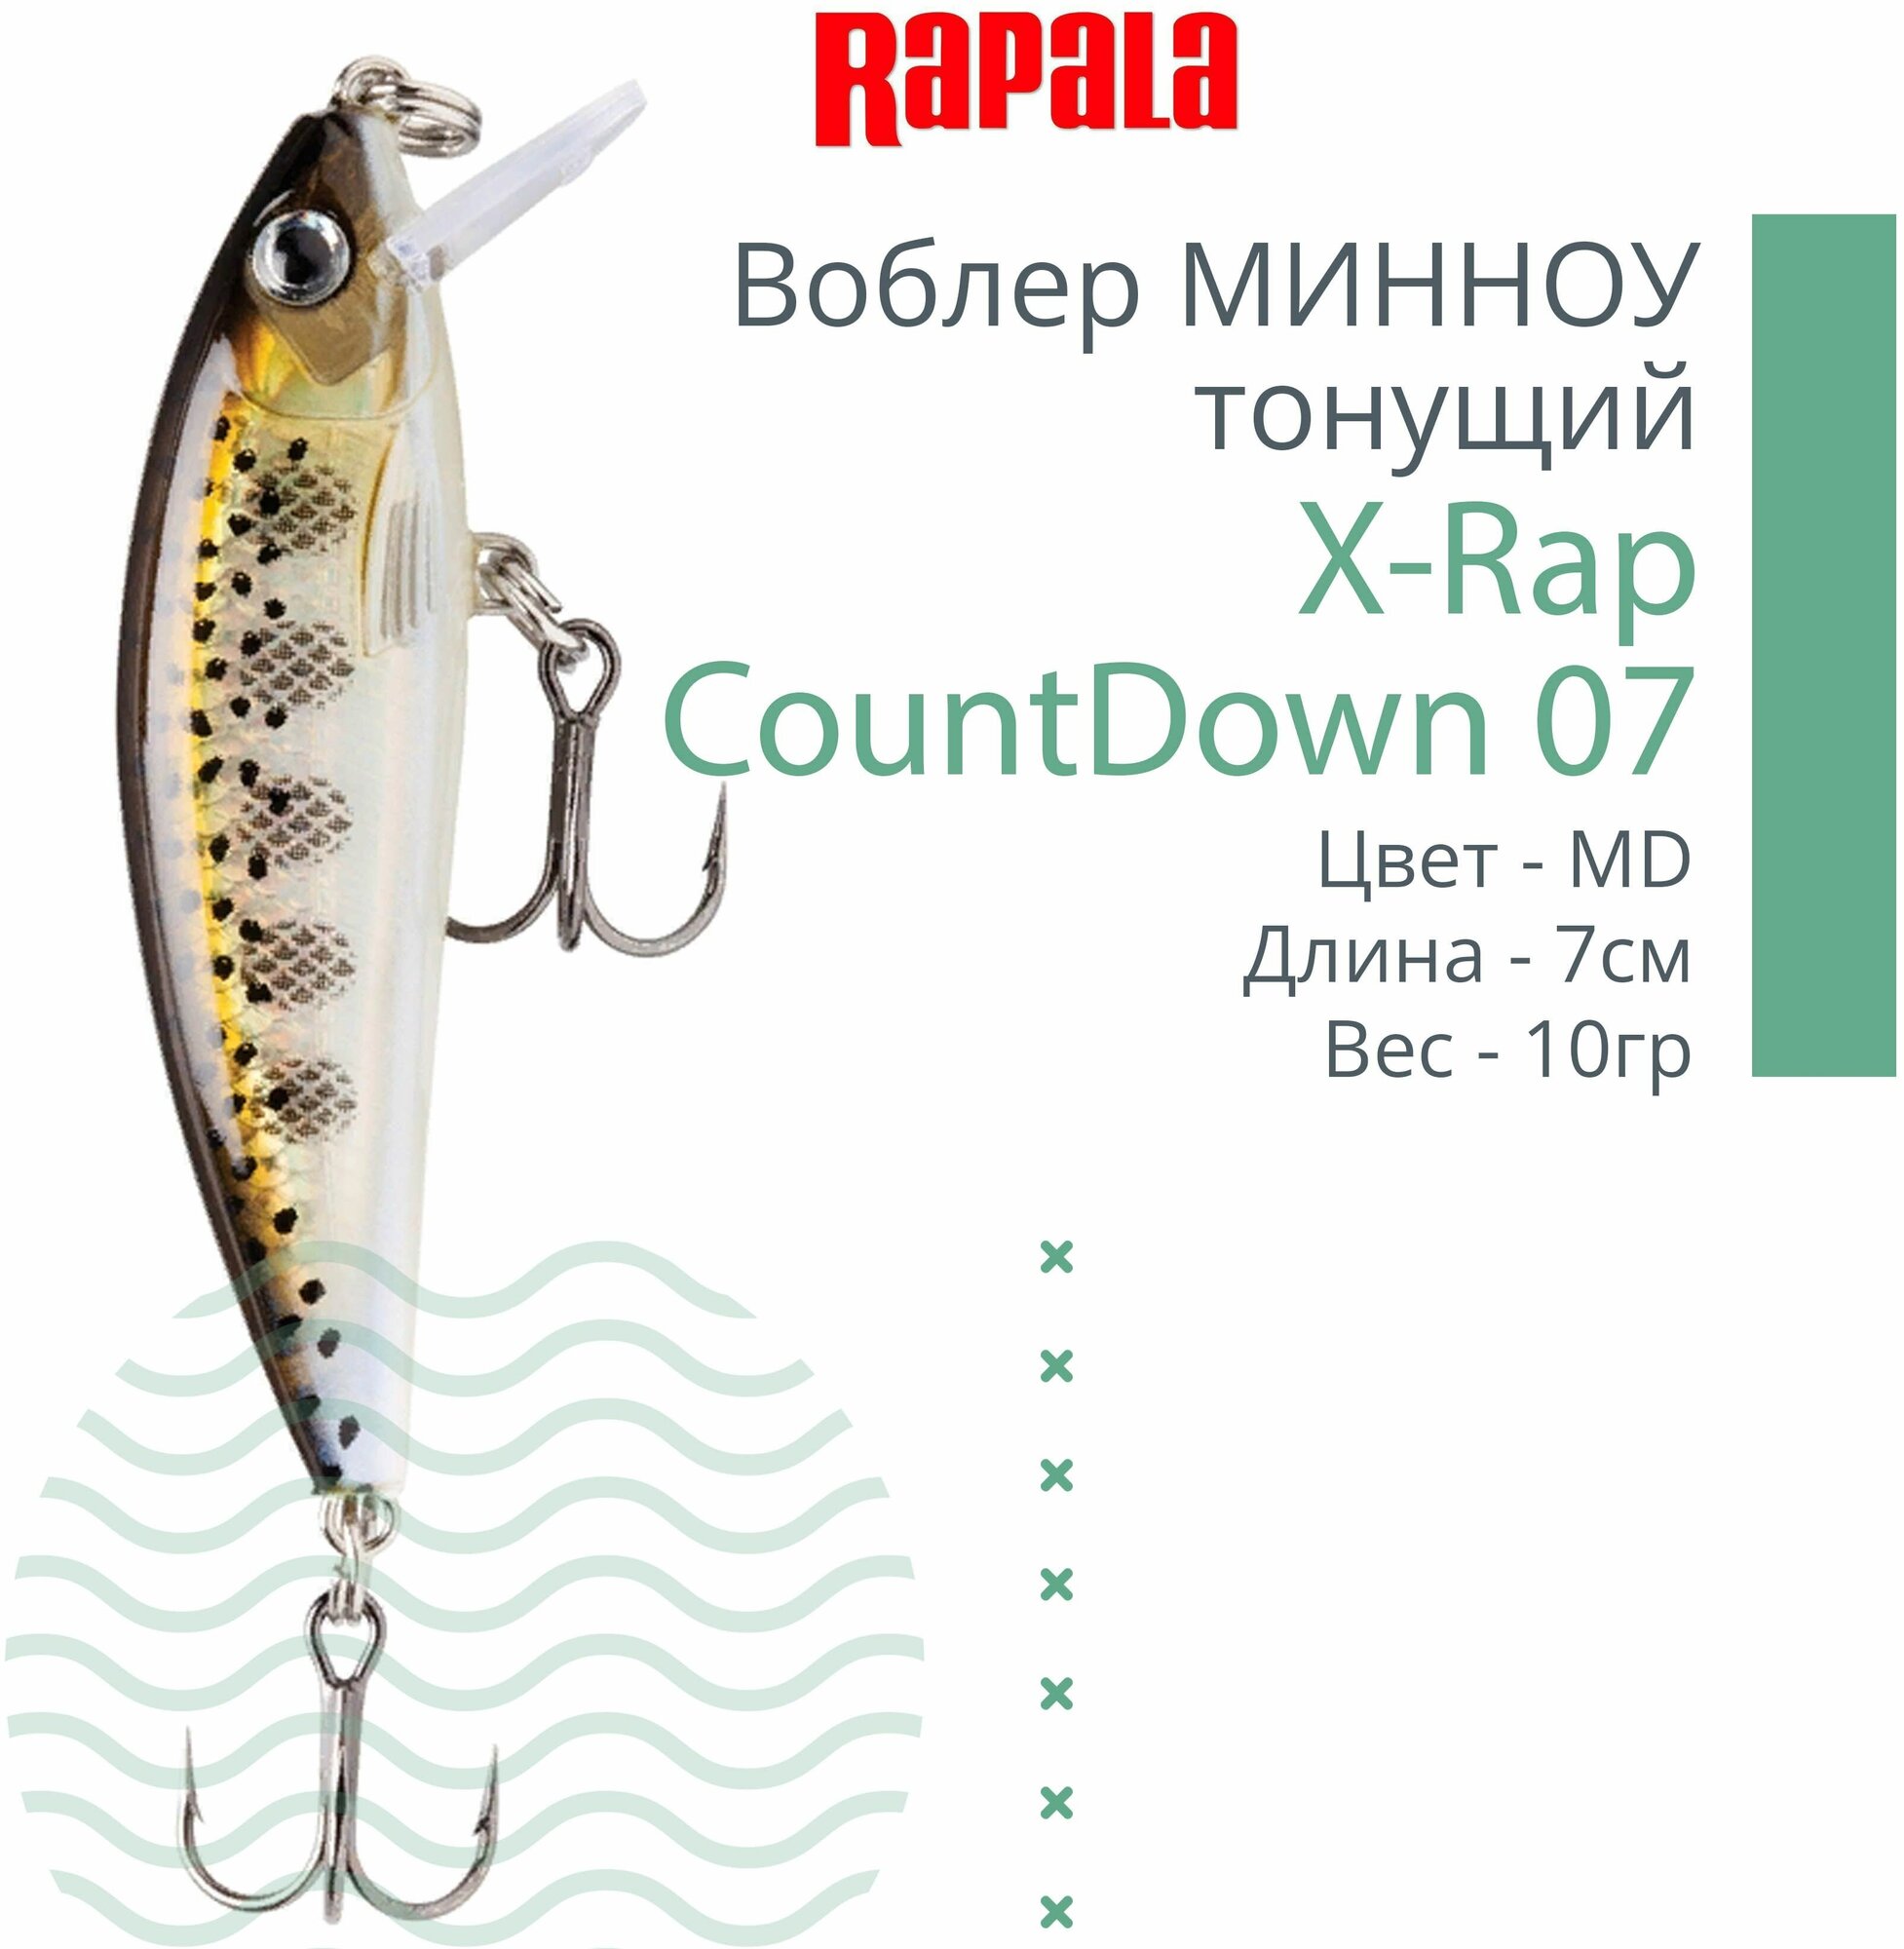 Воблер для рыбалки RAPALA X-Rap CountDown 07, 7см, 10гр, цвет MD, тонущий